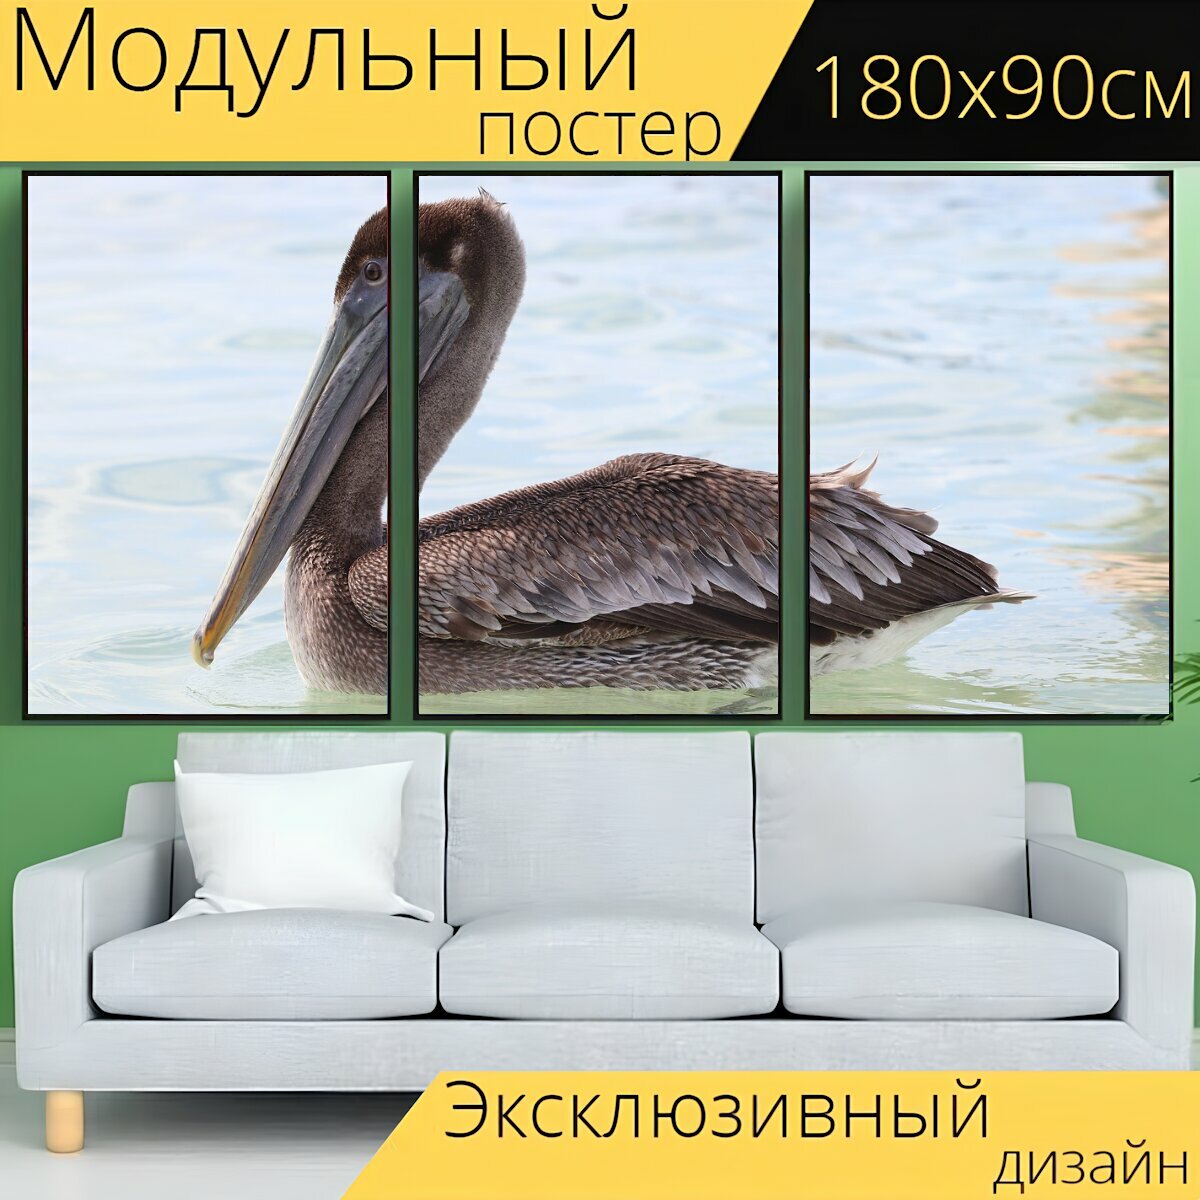 Модульный постер "Пеликан, птица, природа" 180 x 90 см. для интерьера